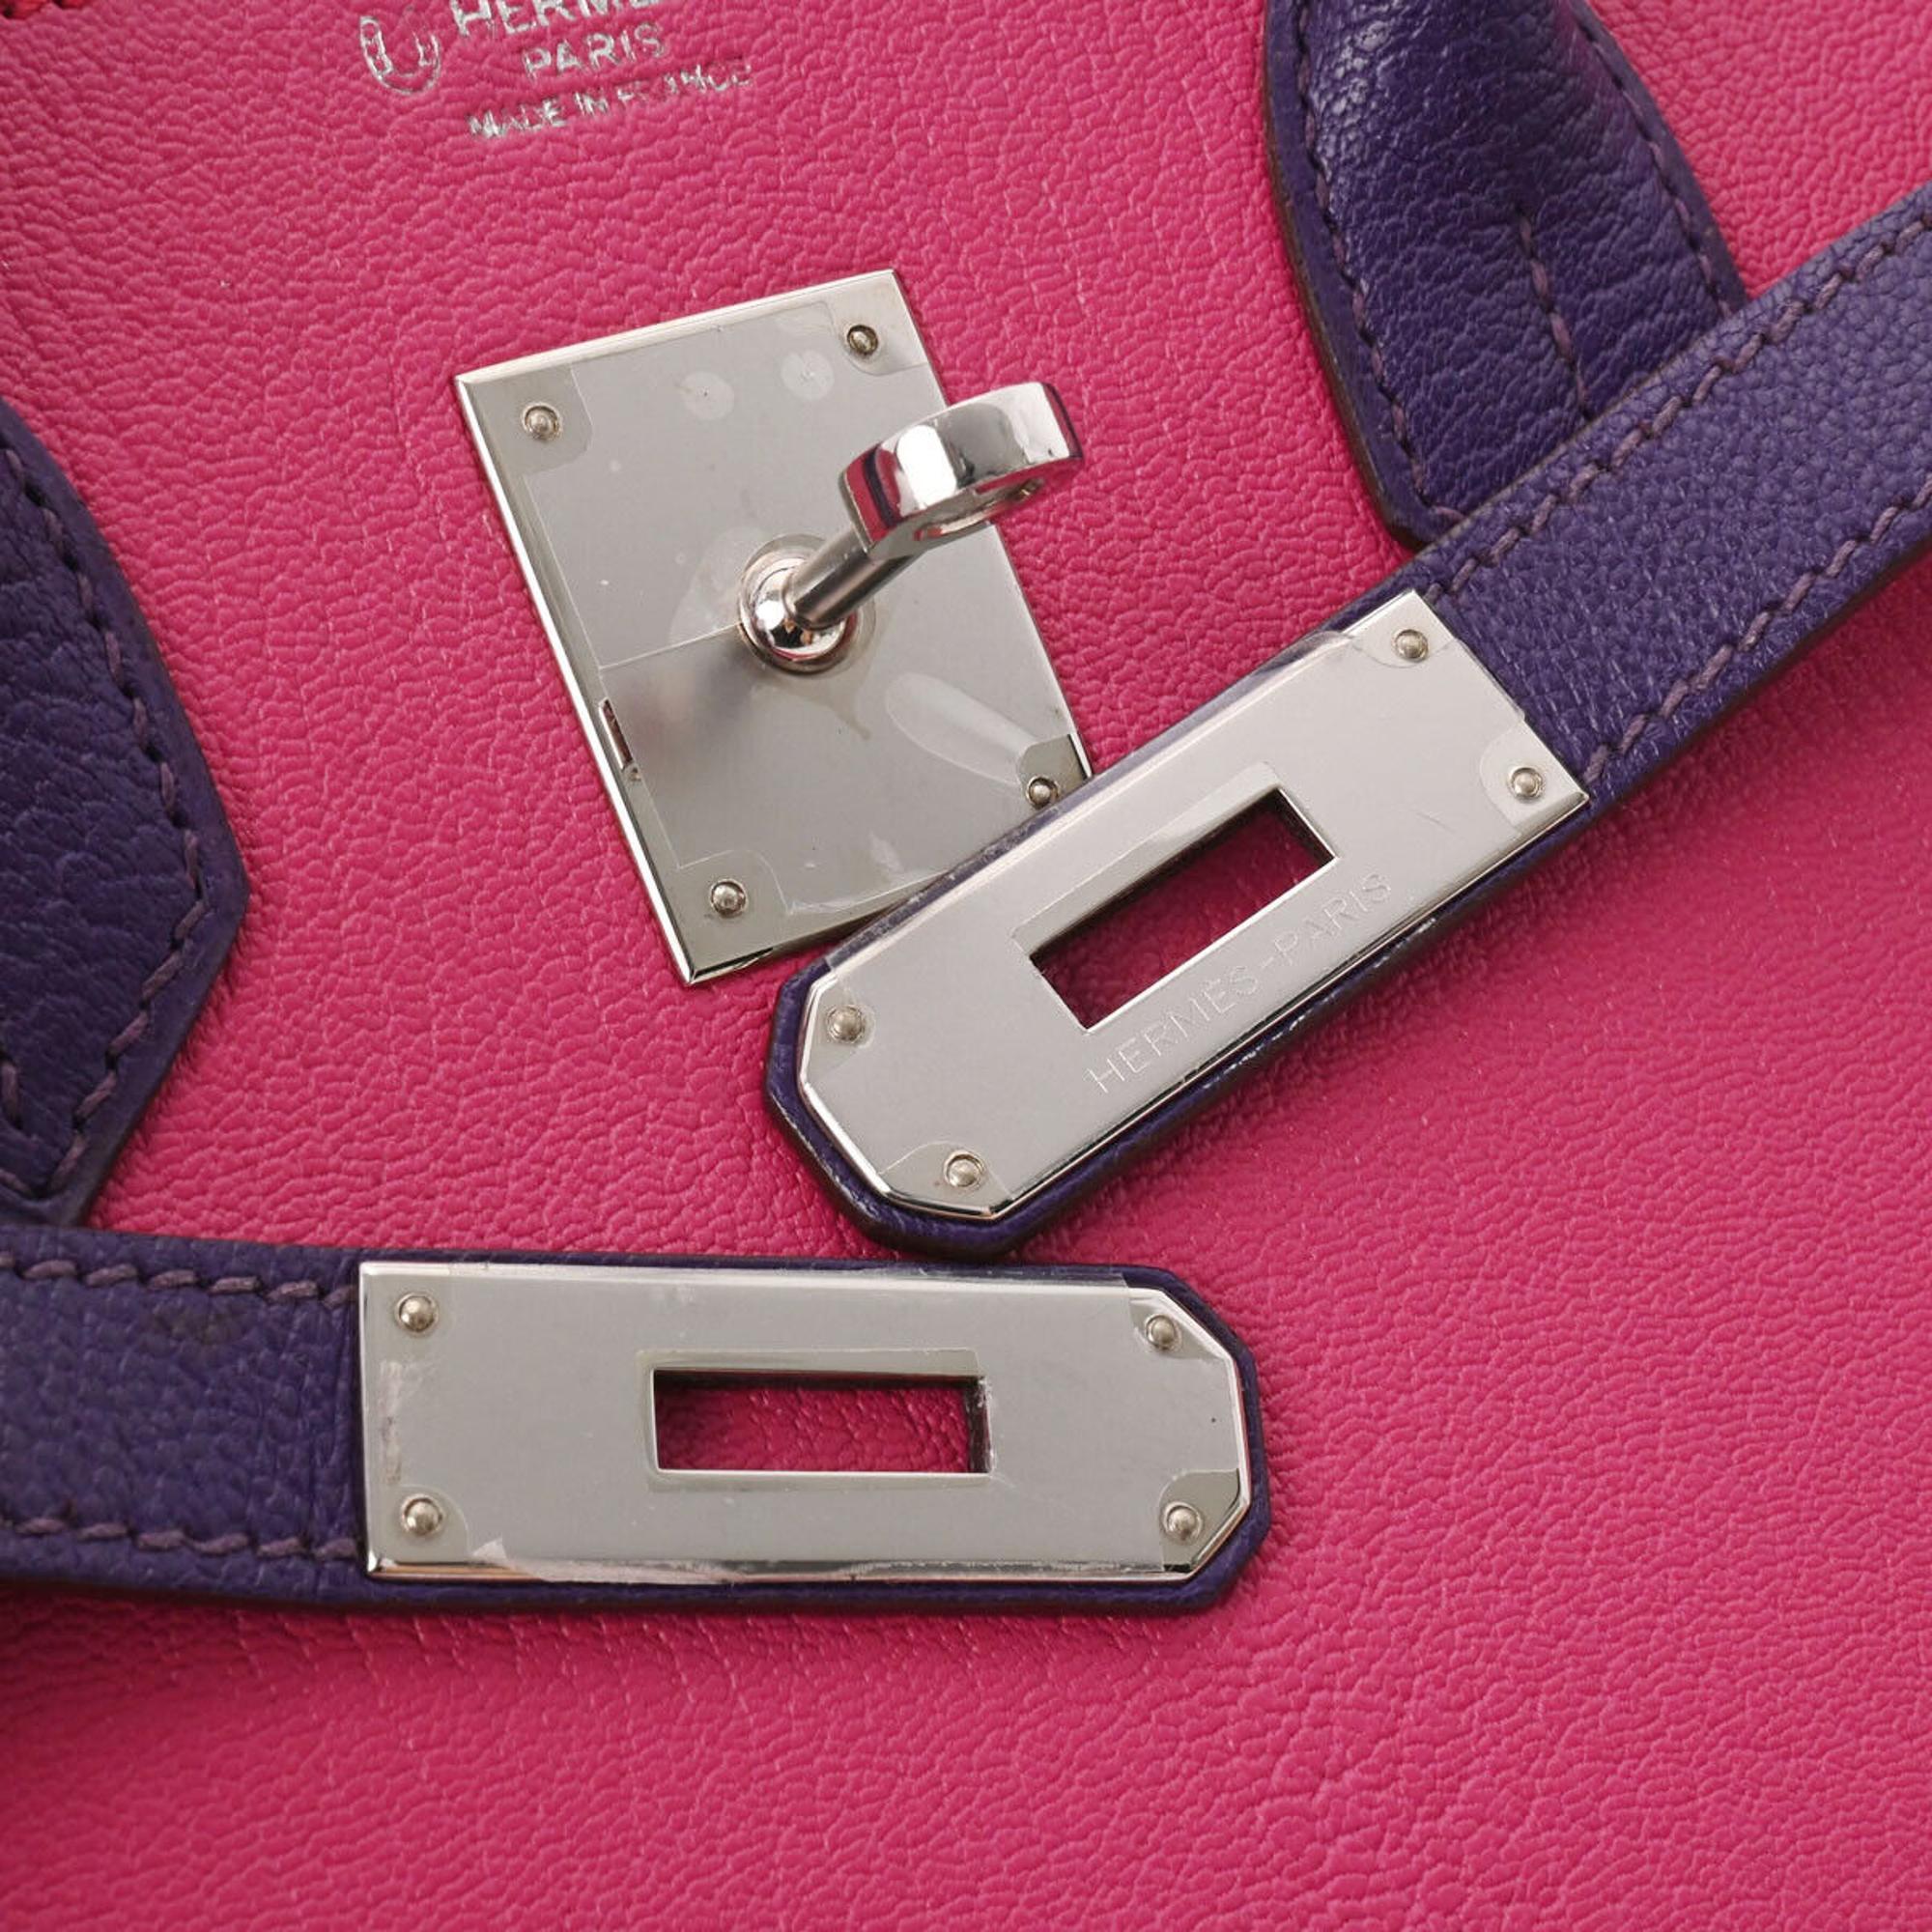 Hermes Purple/Pink Chevre Leather Palladium Hardware Birkin 30 Bag